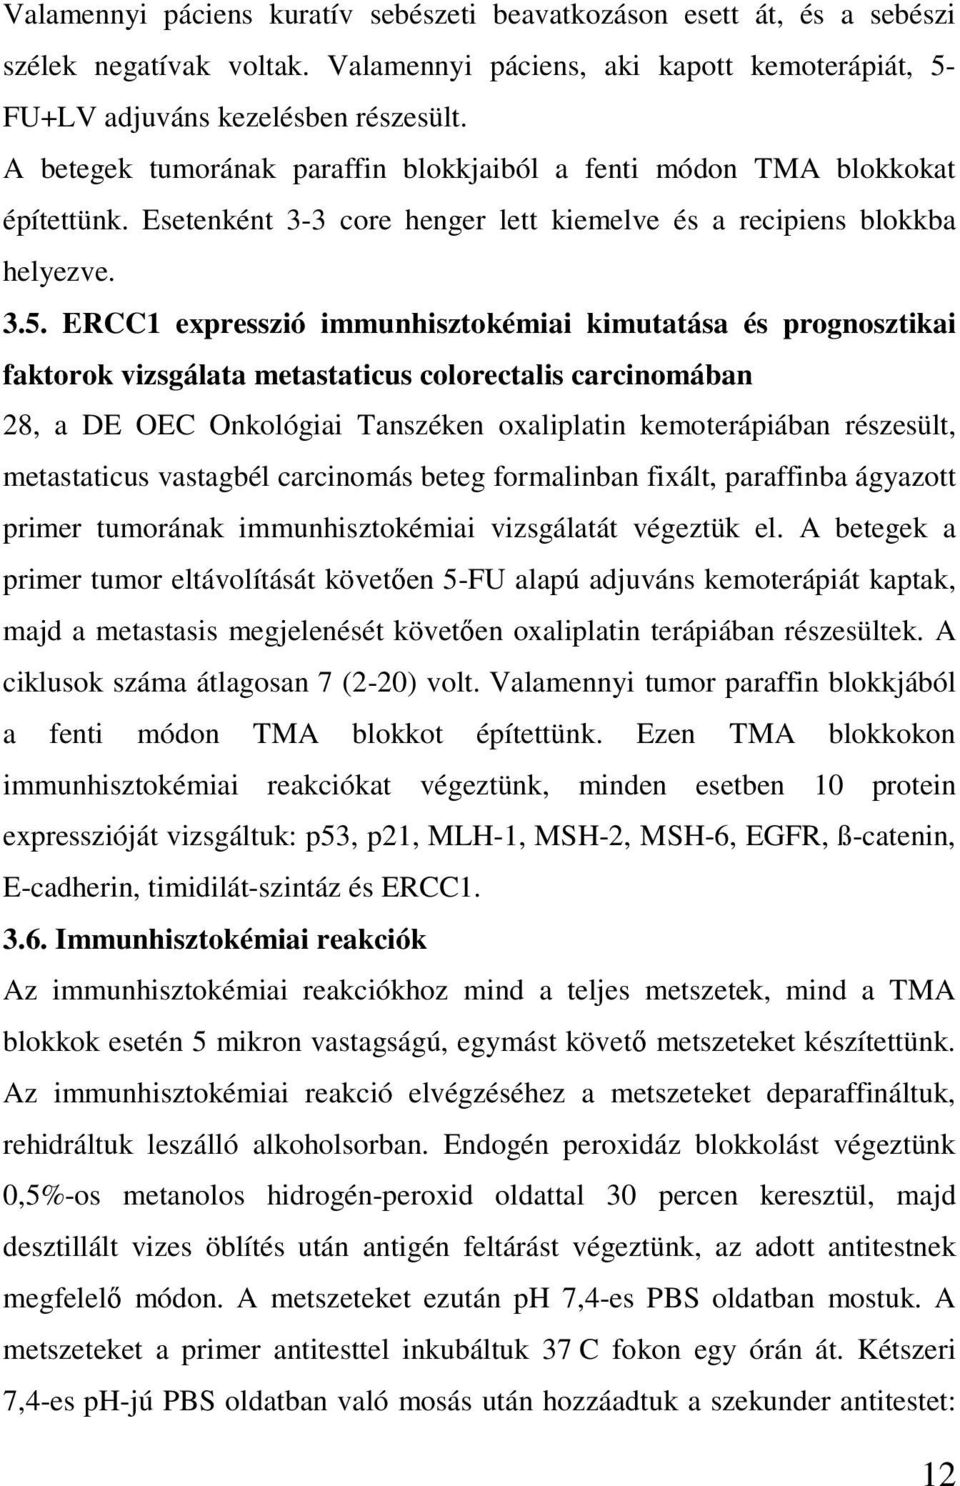 ERCC1 expresszió immunhisztokémiai kimutatása és prognosztikai faktorok vizsgálata metastaticus colorectalis carcinomában 28, a DE OEC Onkológiai Tanszéken oxaliplatin kemoterápiában részesült,